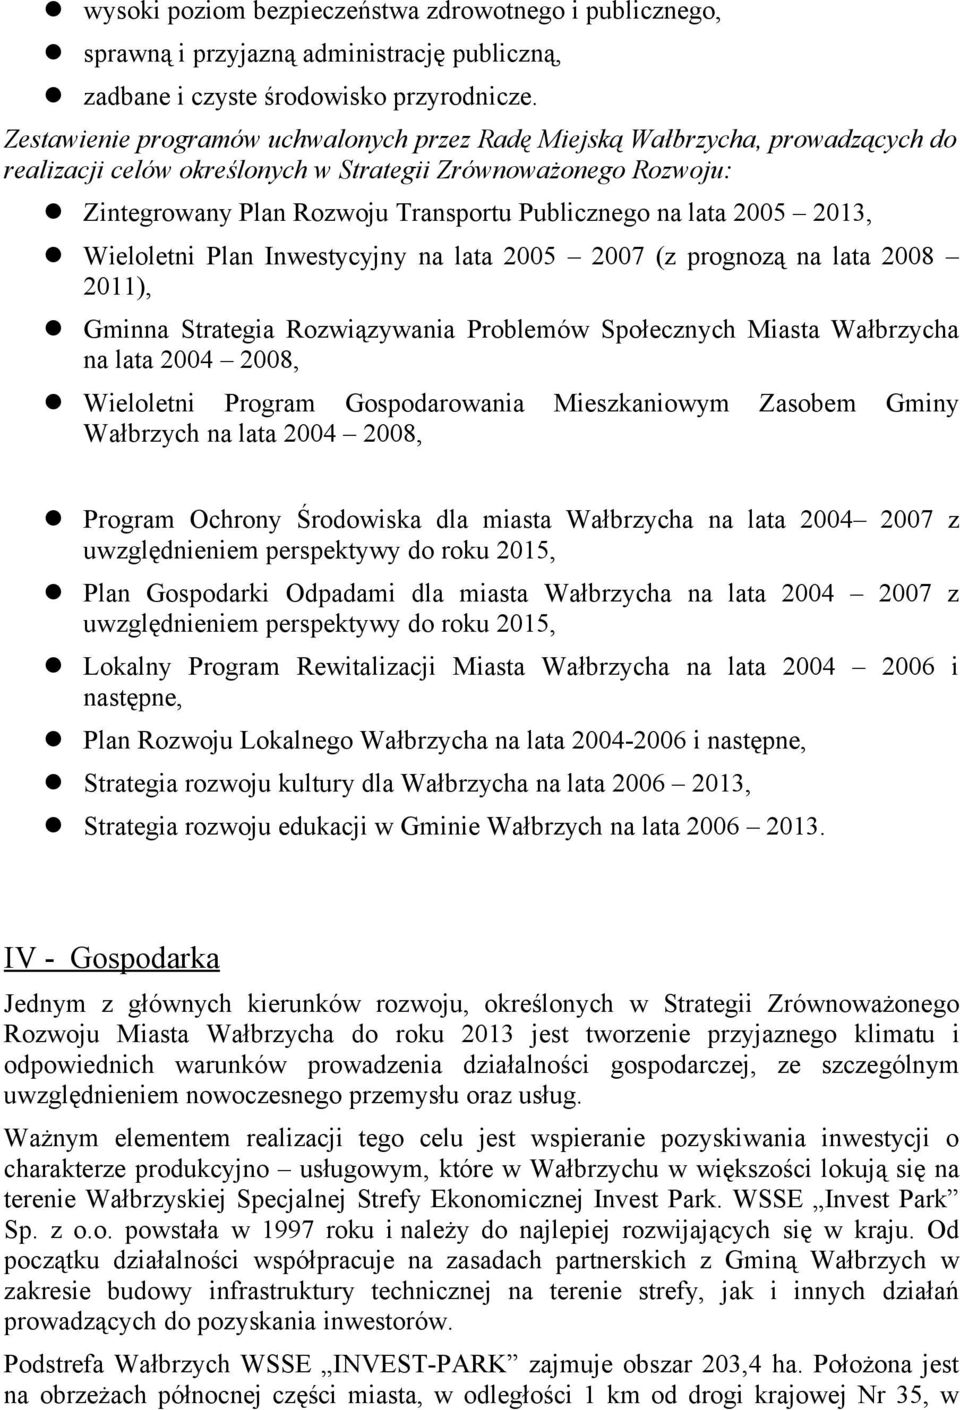 2005 2013, Wieoetni Pan Inwestycyjny na ata 2005 2007 (z prognozą na ata 2008 2011), Gminna Strategia Rozwiązywania Probemów Społecznych Miasta Wałbrzycha na ata 2004 2008, Wieoetni Program